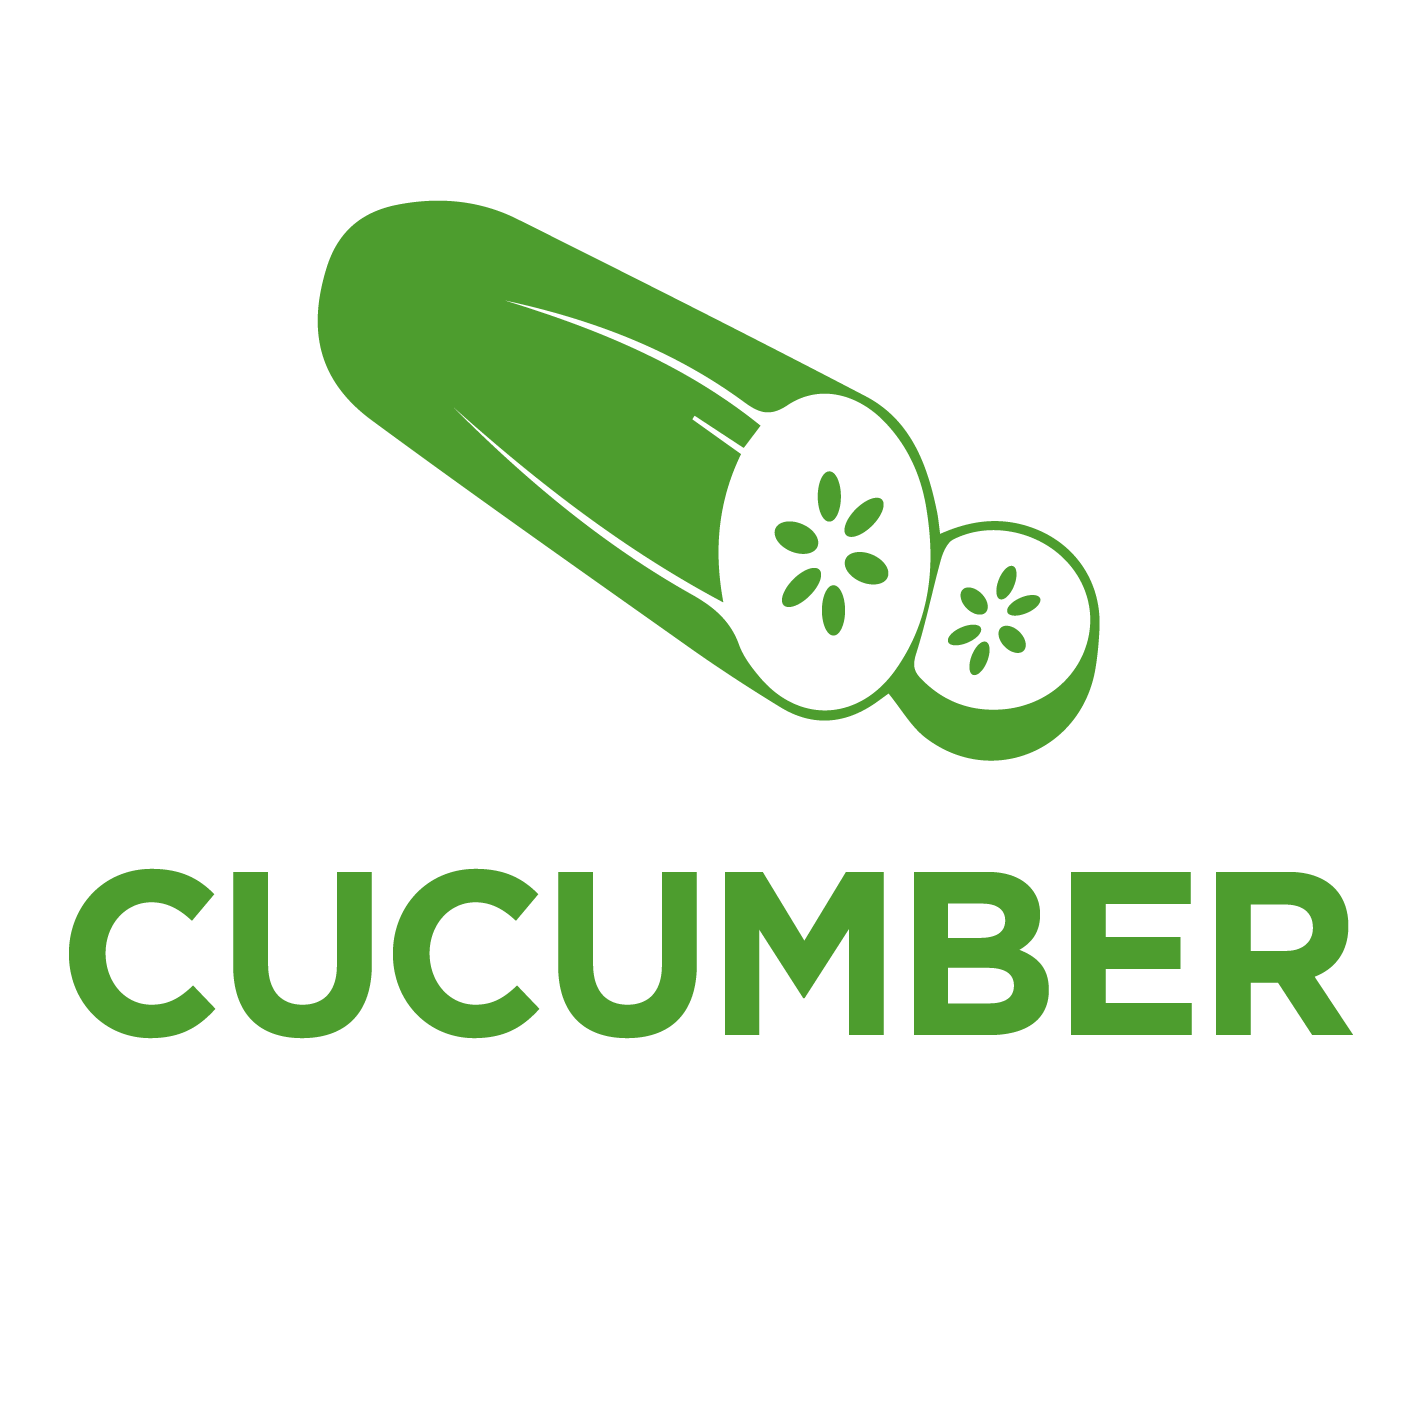 Cucumber Logo - Cucumber